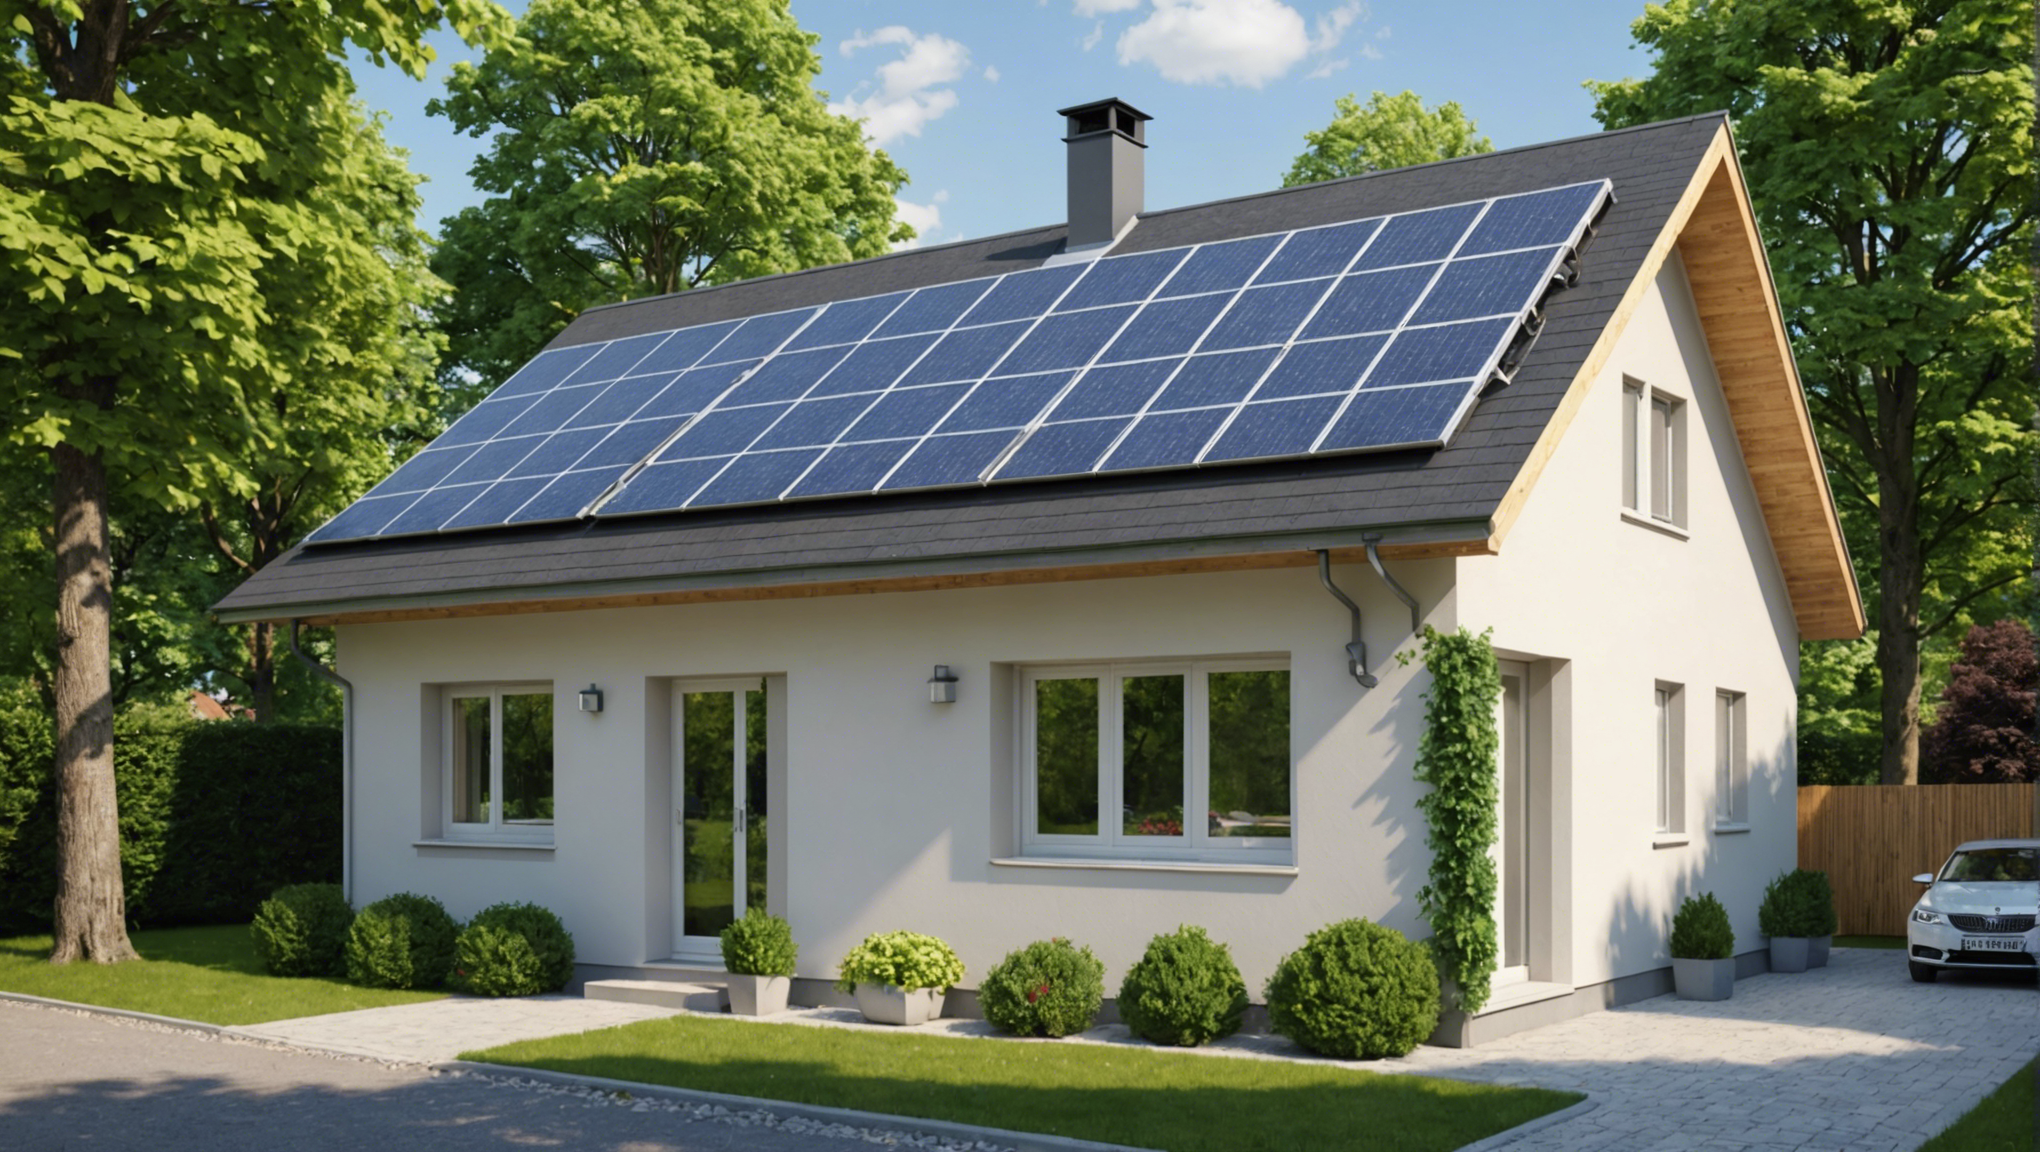 découvrez comment rendre votre maison plus économe en énergie grâce à la rénovation schneider electric et ses solutions innovantes pour un habitat durable.